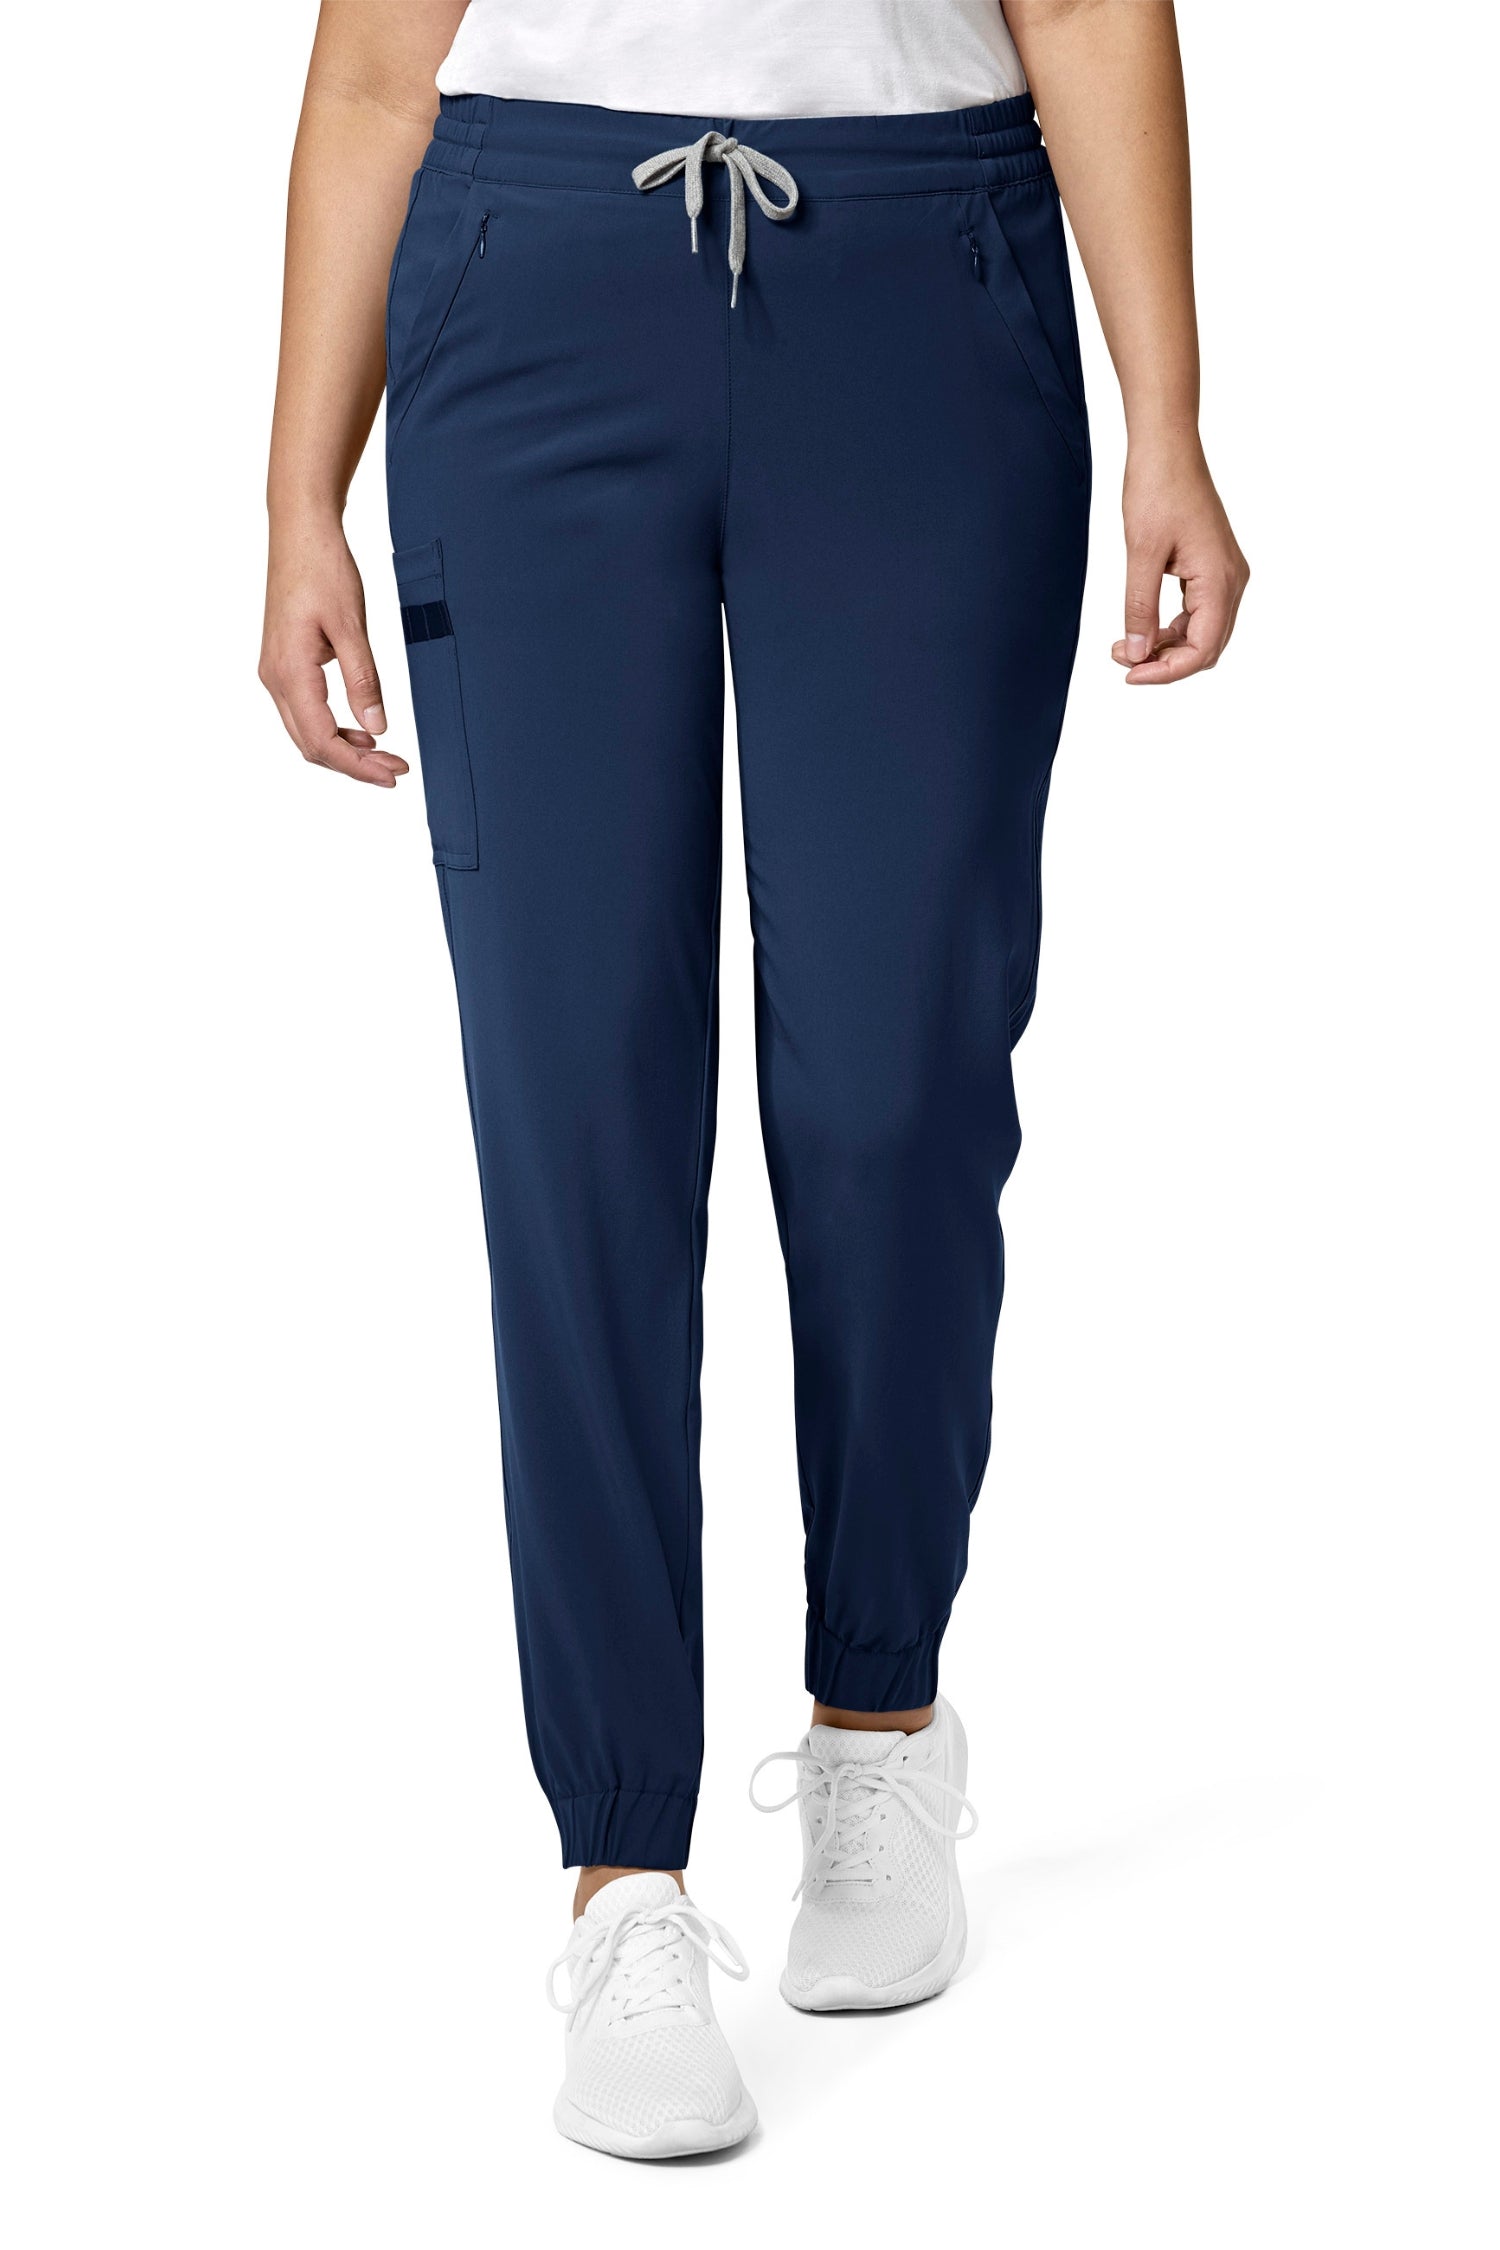 Pantalon médical pour femme coupe moderne bleu marine avec poches classiques et cargo